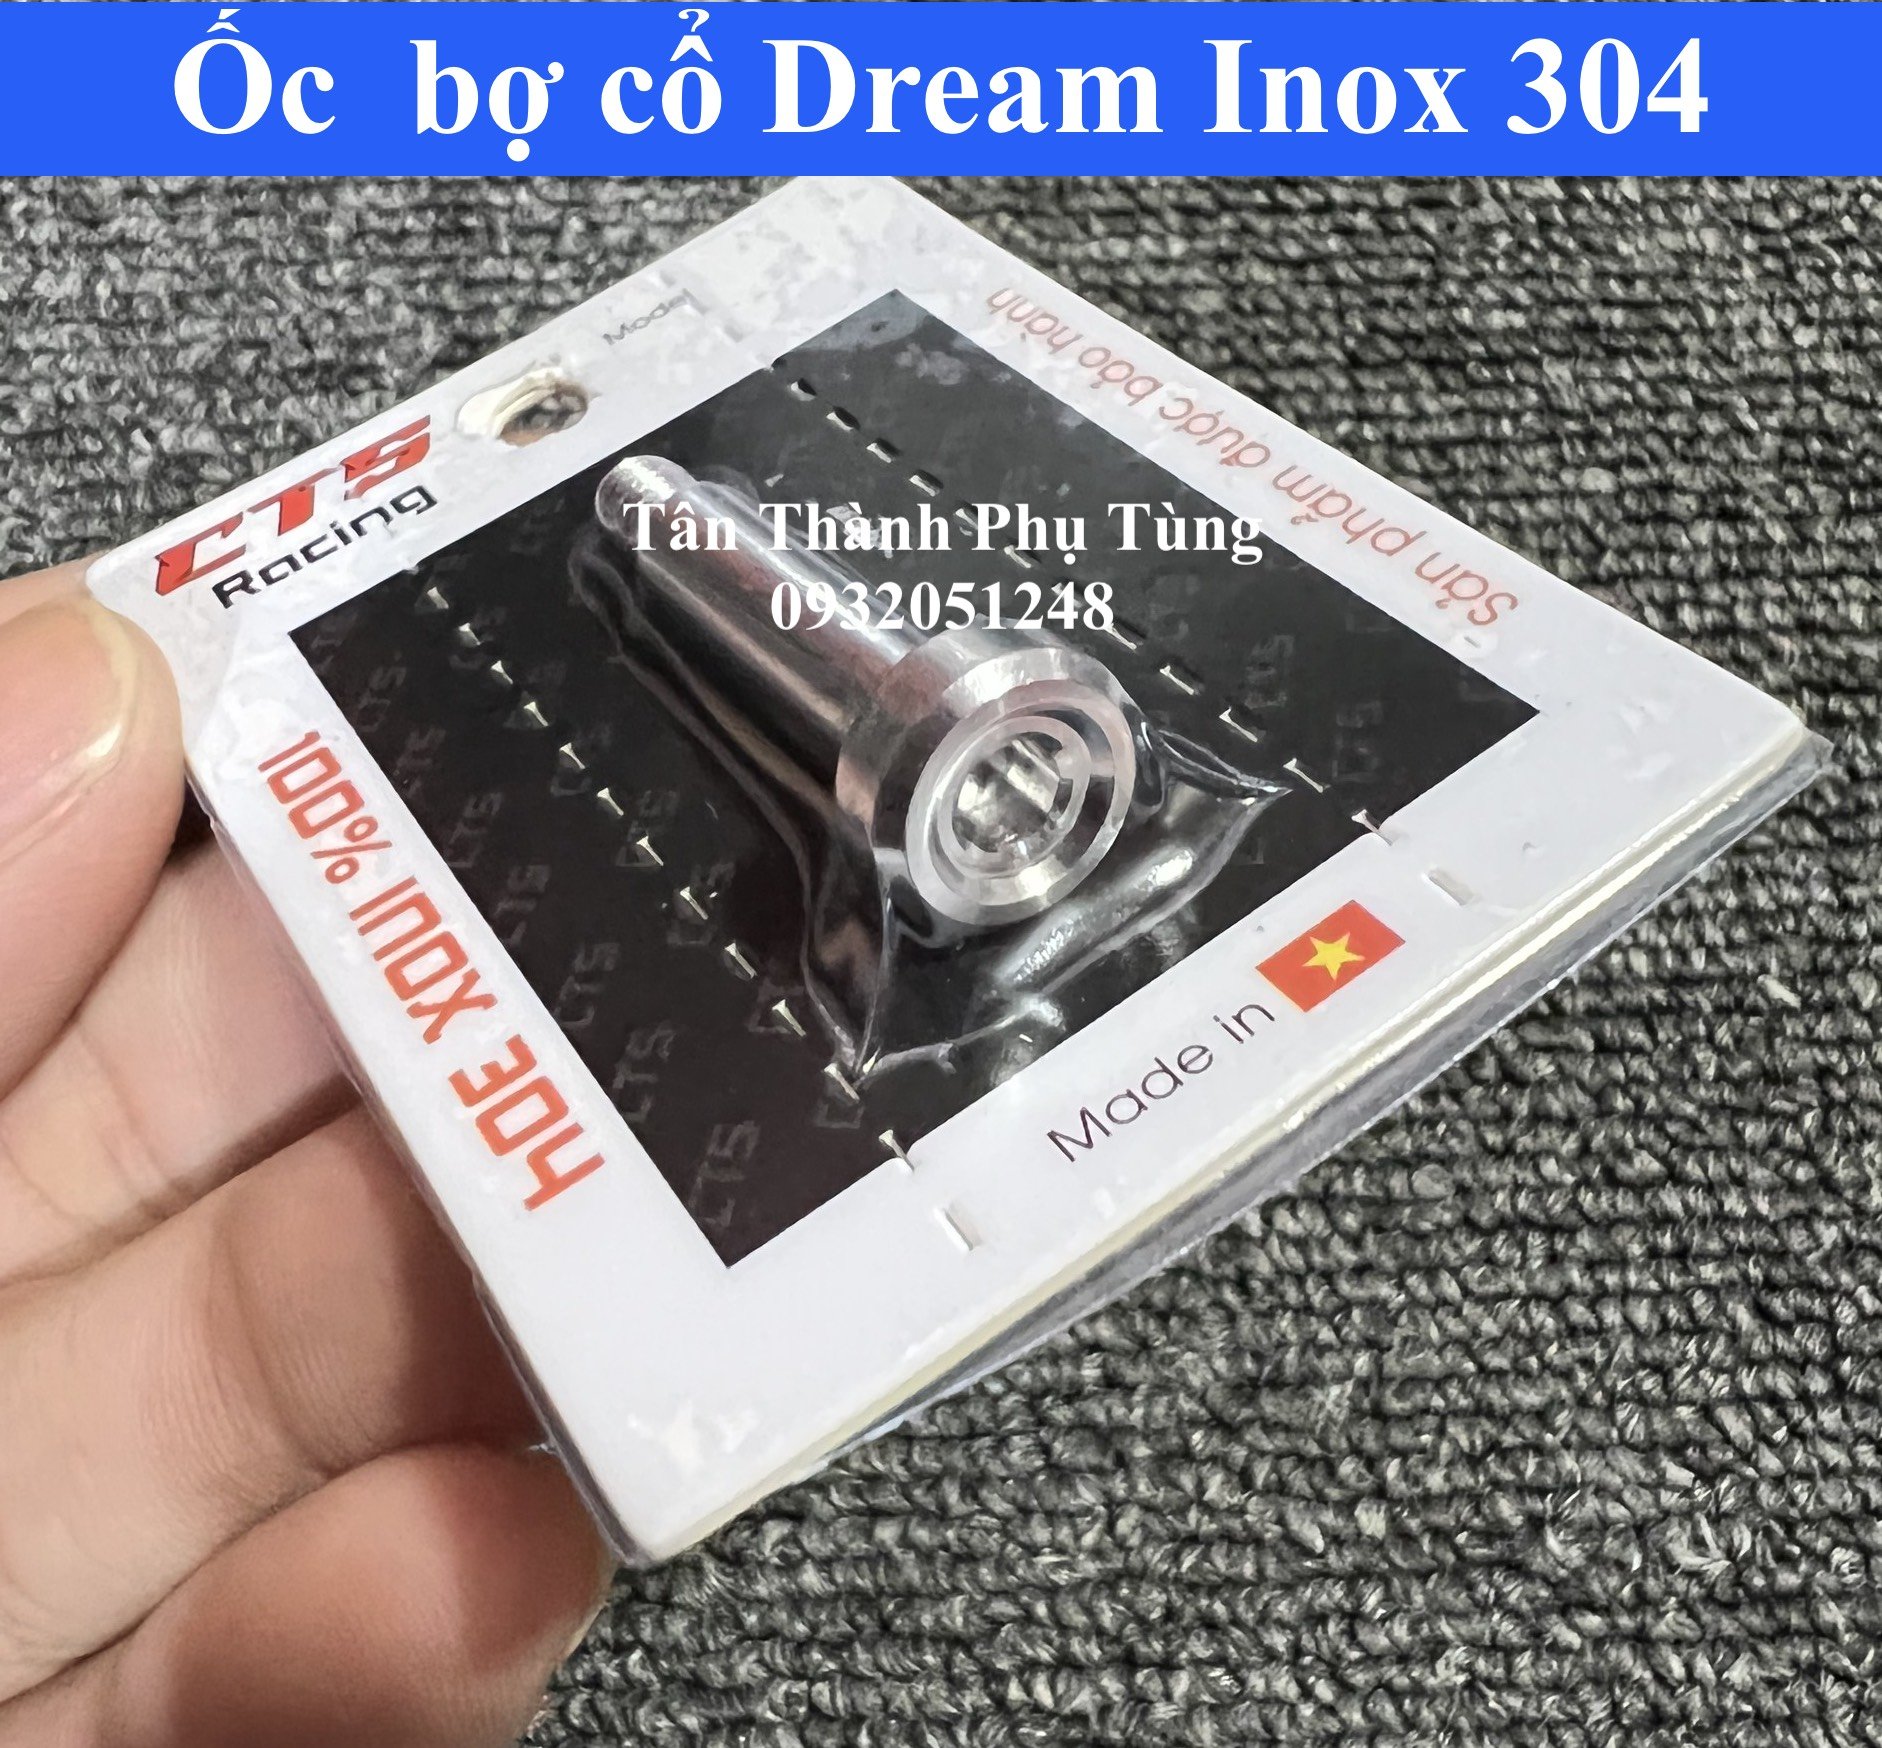 Ốc bợ cổ dành cho Dream Inox 304 CTS